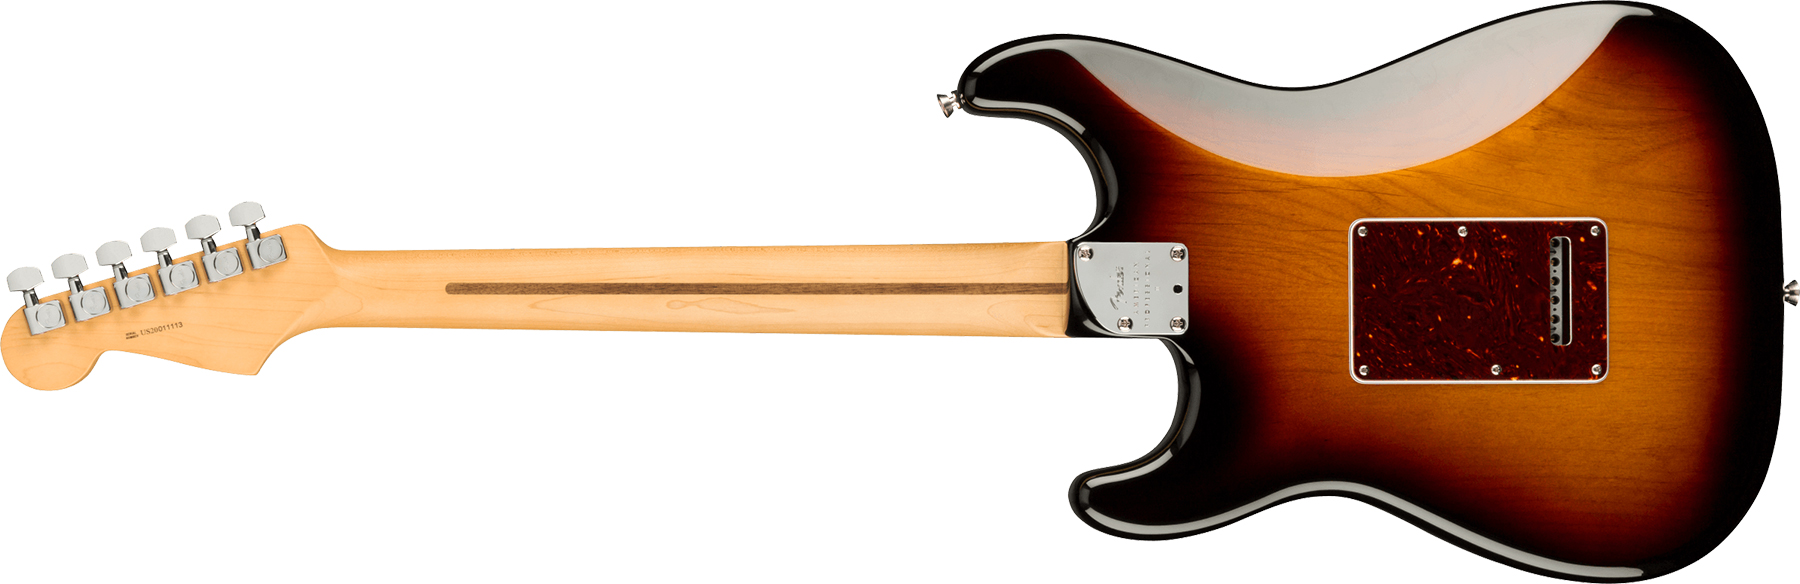 Fender Strat American Professional Ii Usa Mn - 3-color Sunburst - E-Gitarre in Str-Form - Variation 1